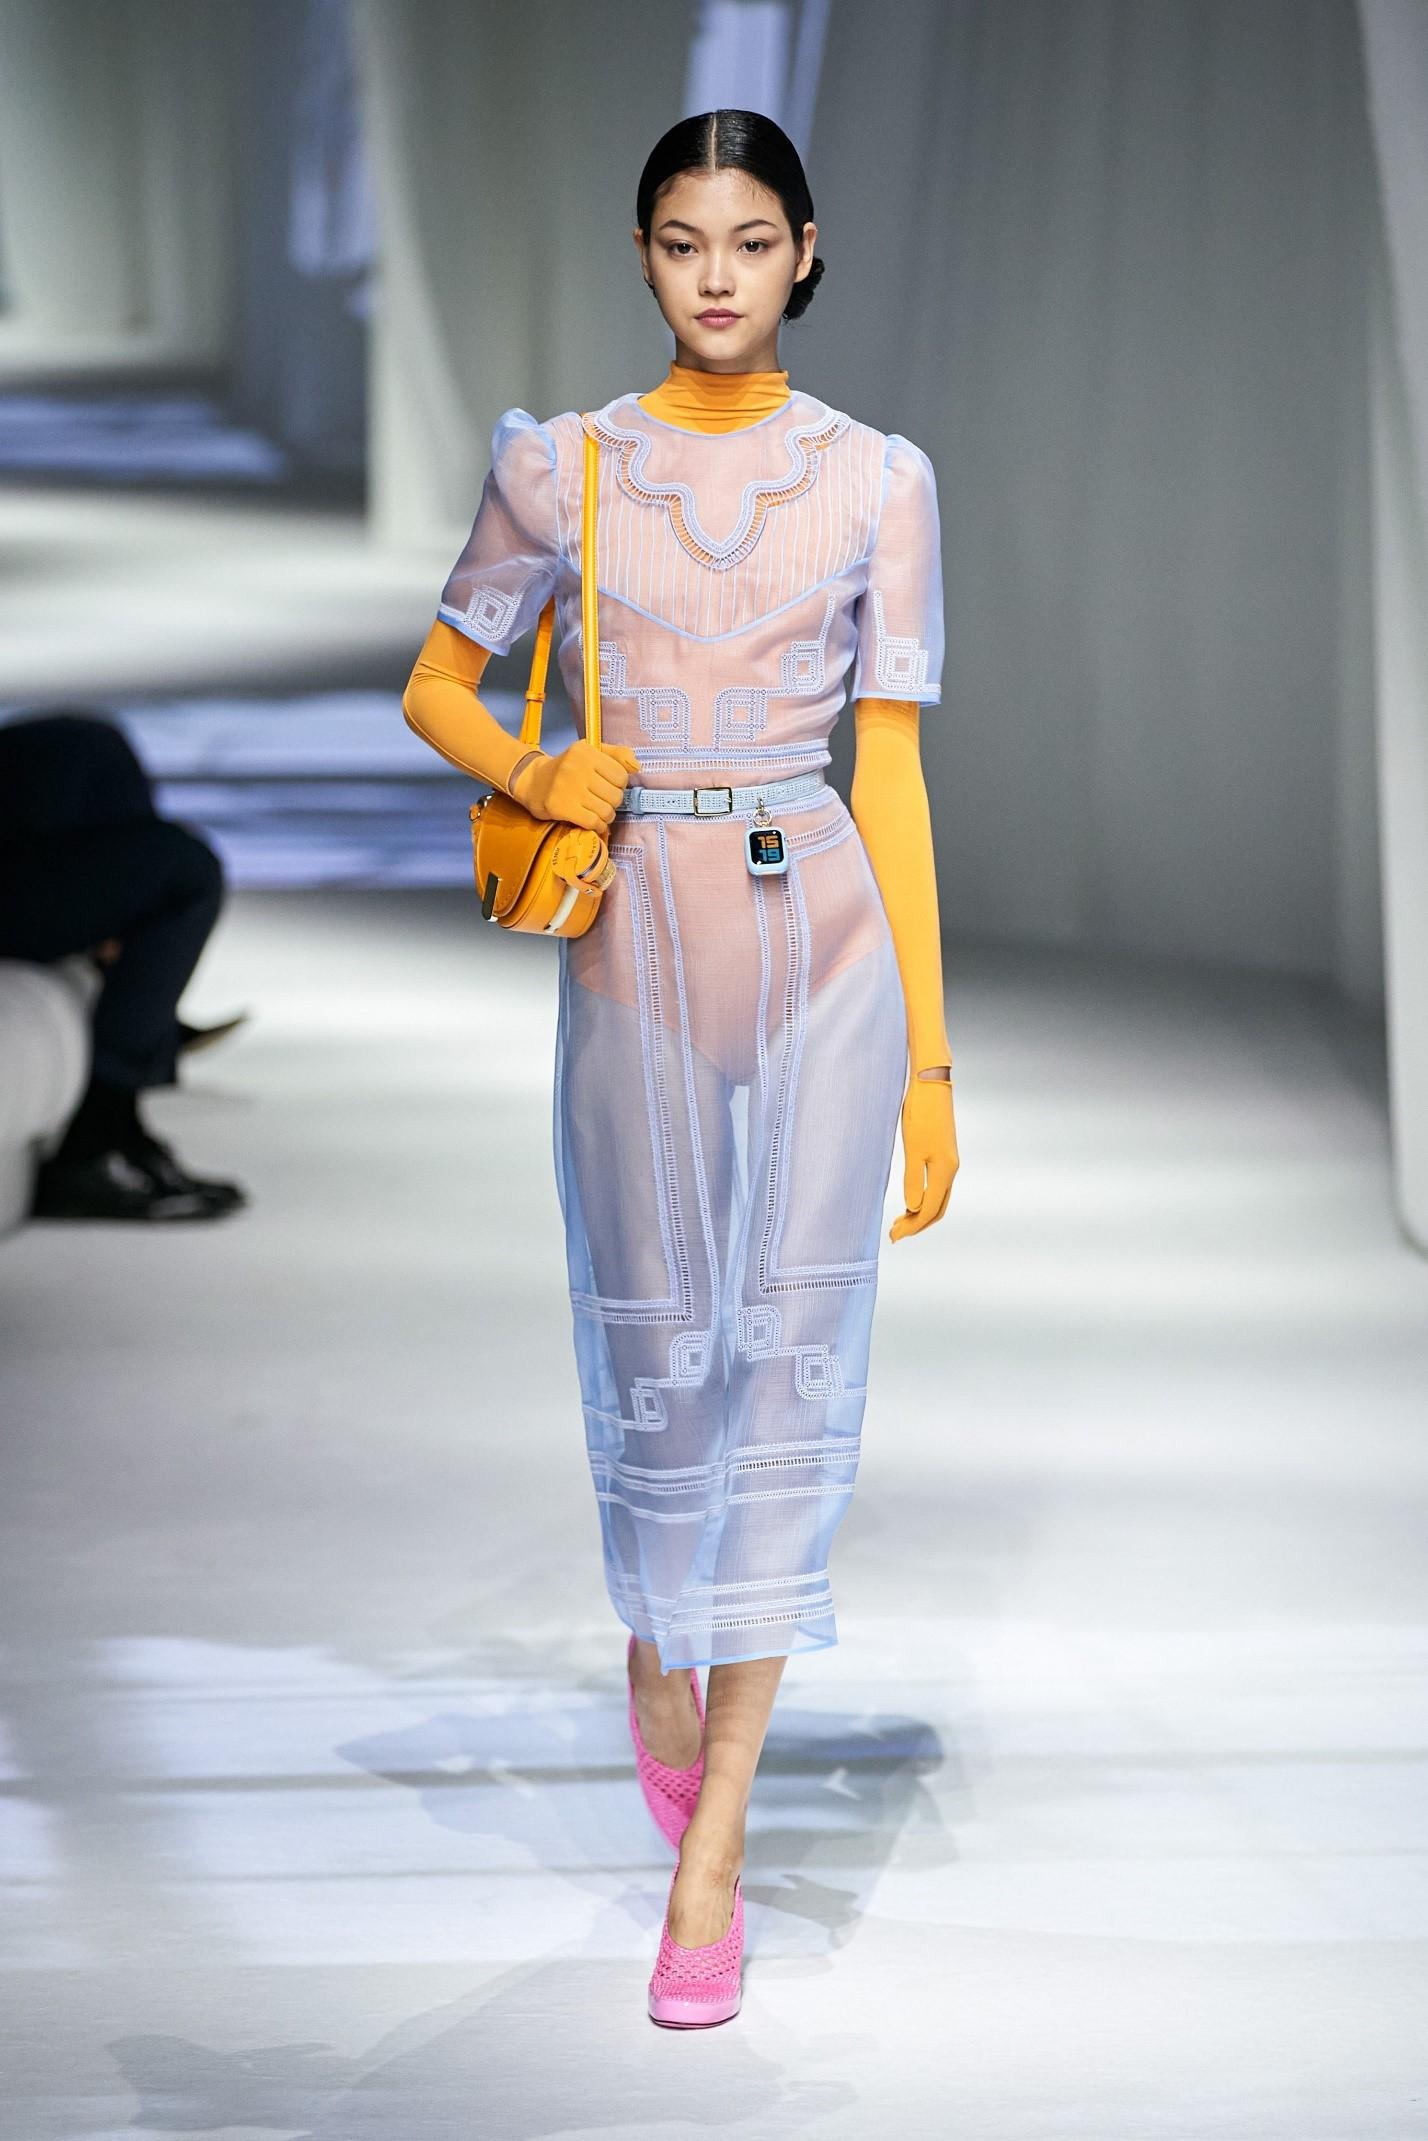 Plus-size модель Эшли Грэм появилась на подиуме во время Недели моды в Милане